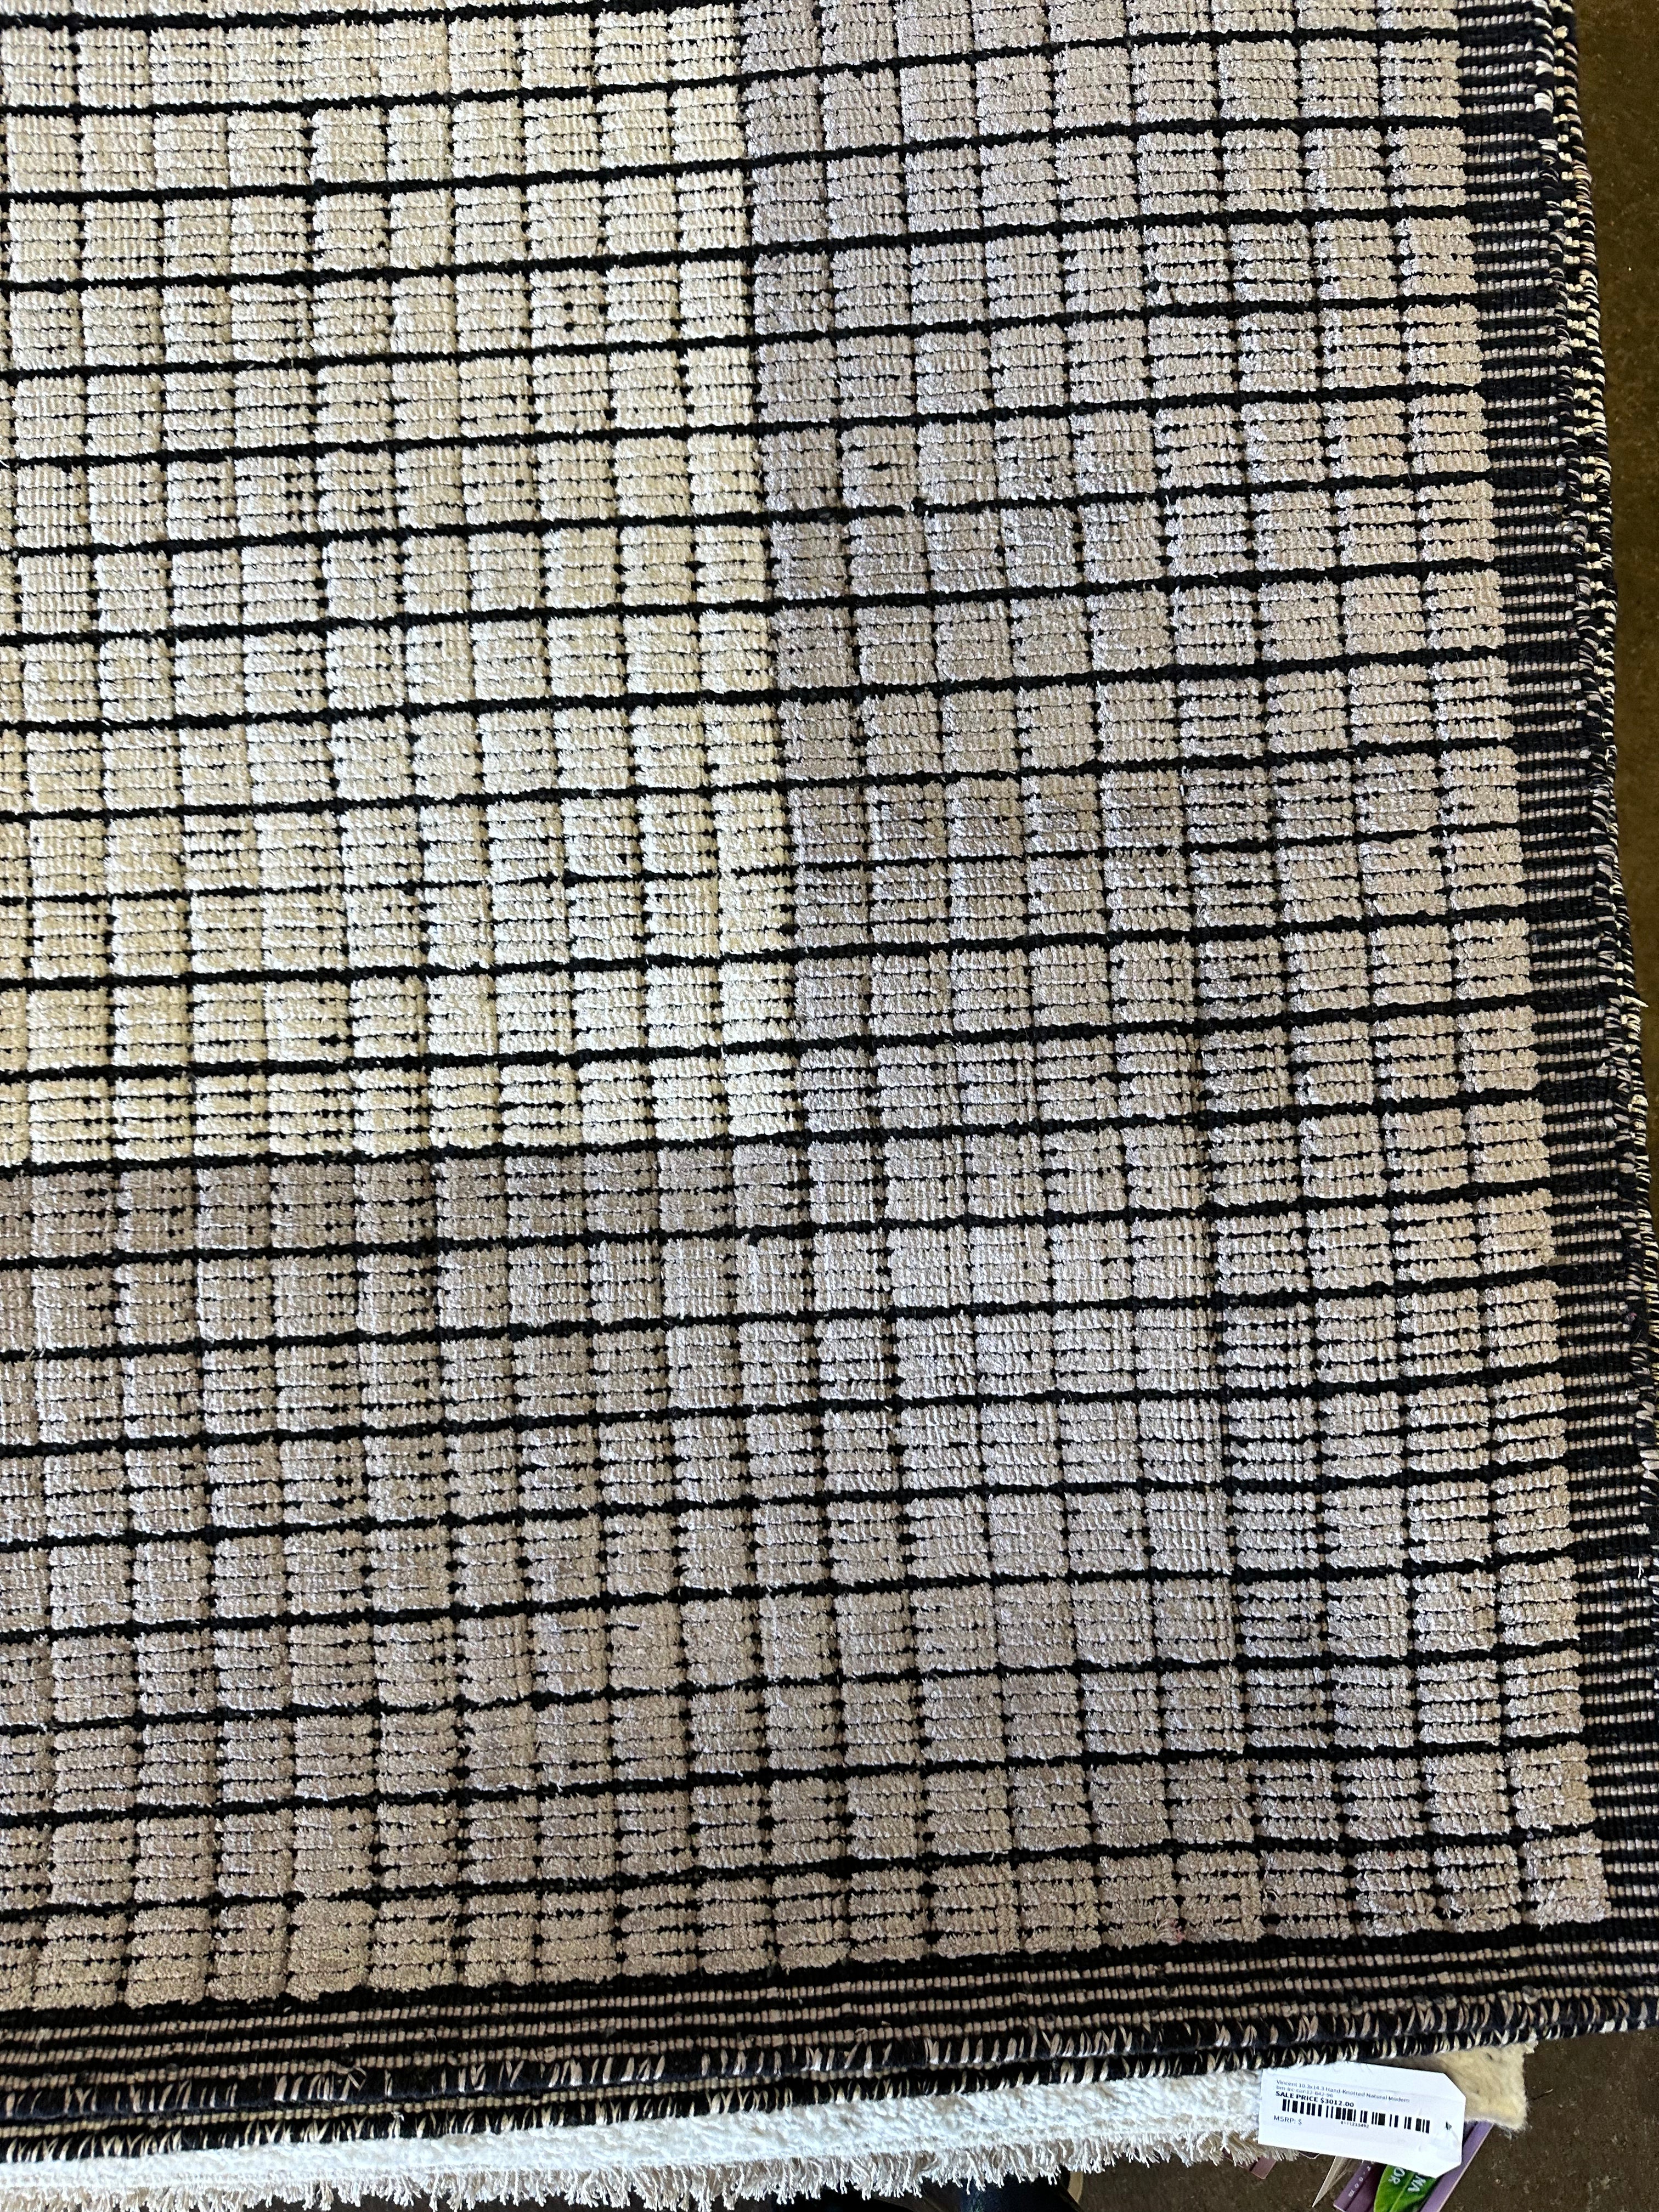 Karl Mueller 9.6x13.9 Handwoven Blended Textured Carpet